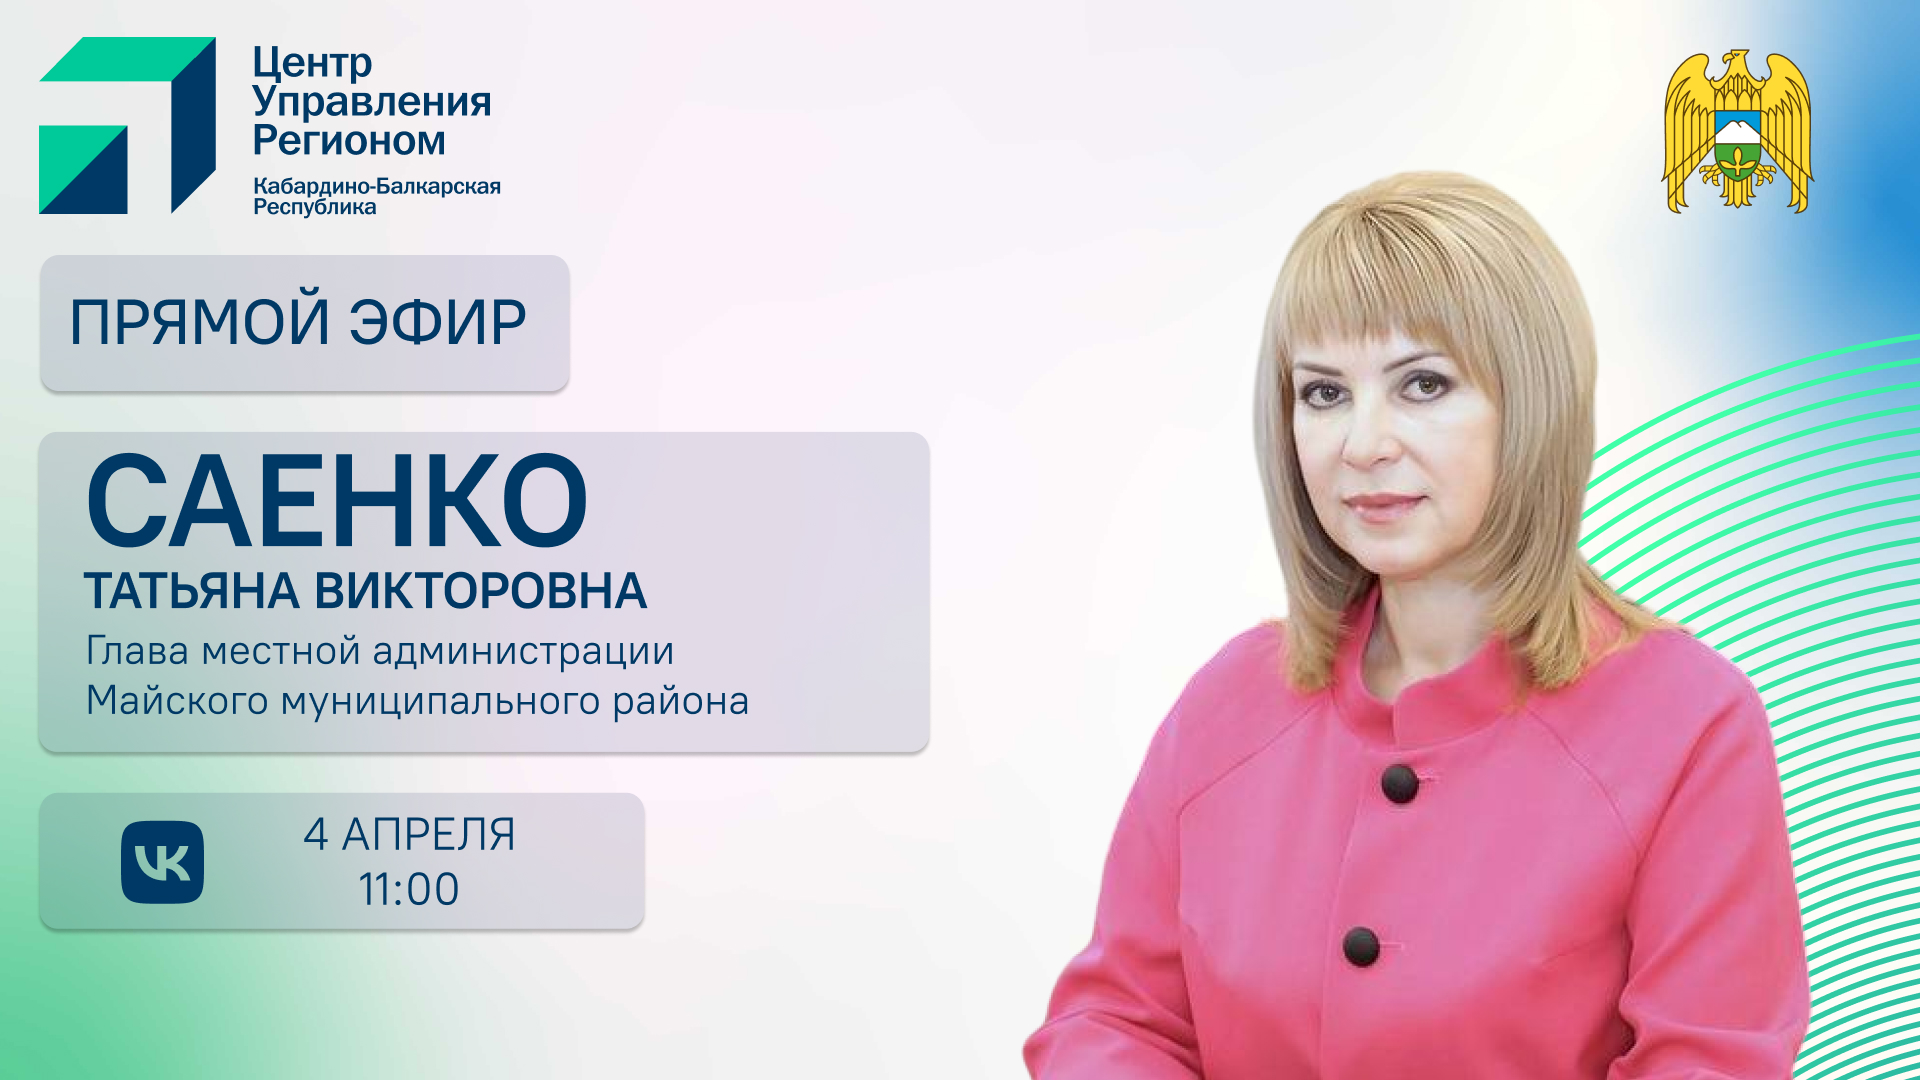 ЦУР КБР проведет прямой эфир с главой местной администрации Майского района Татьяной Саенко